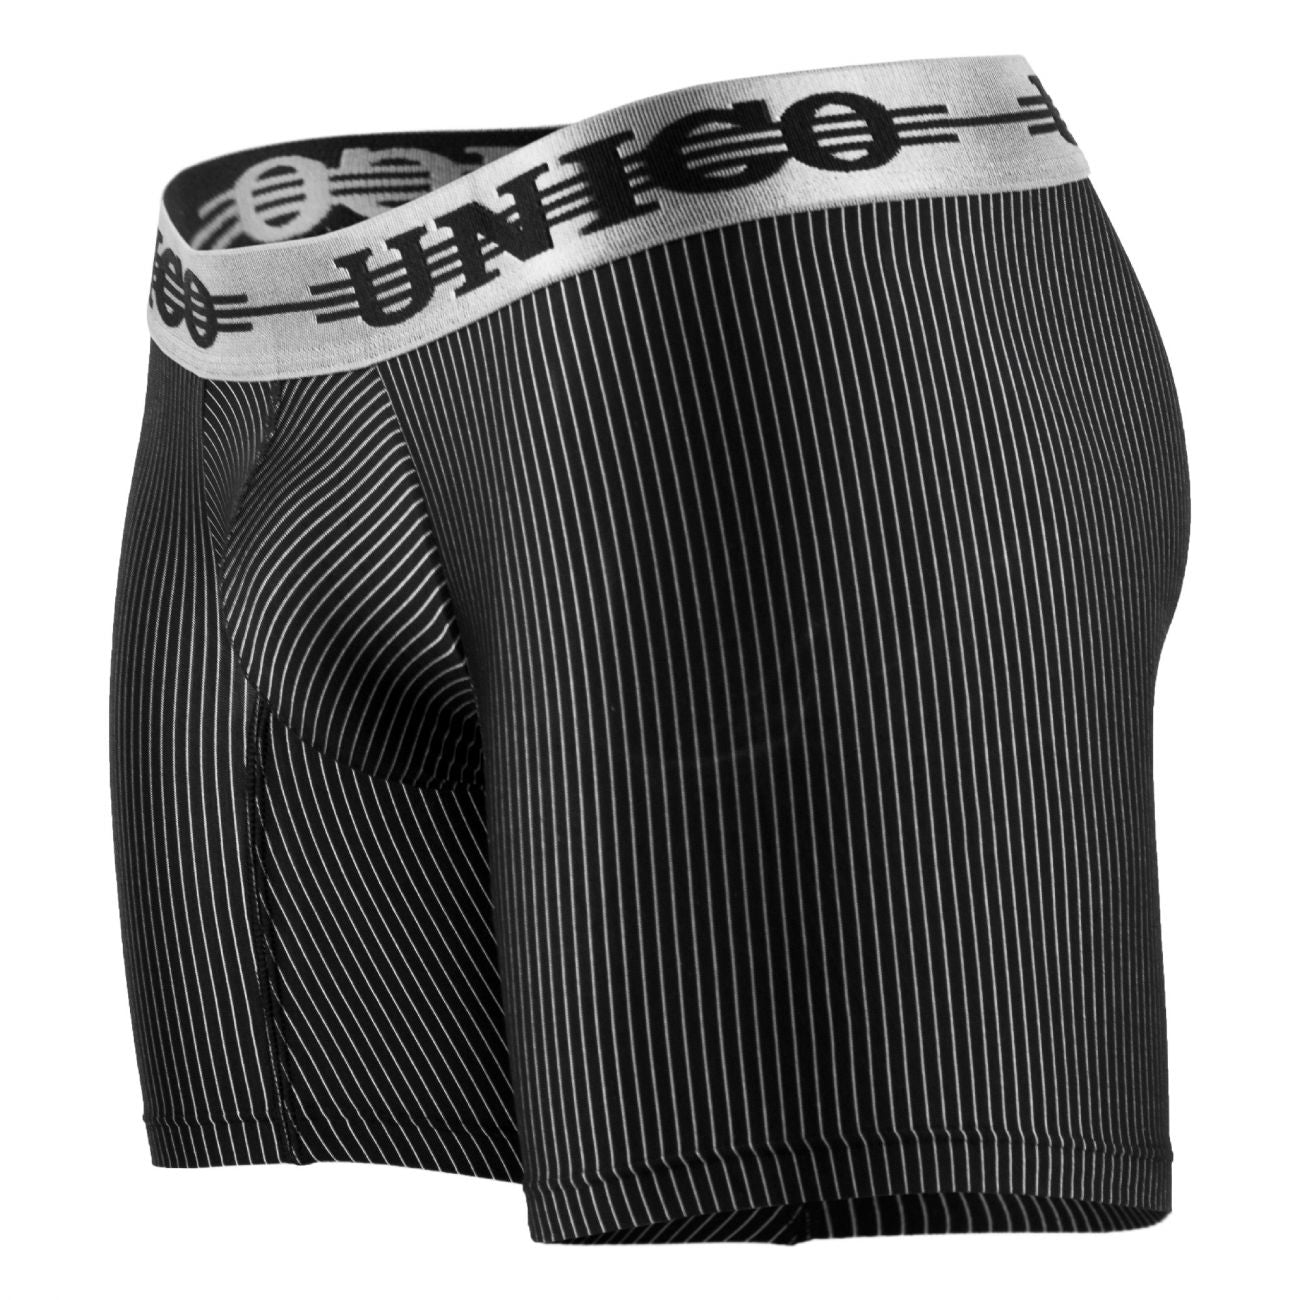 Unico 1802010020199 Boxer Briefs Trend Black